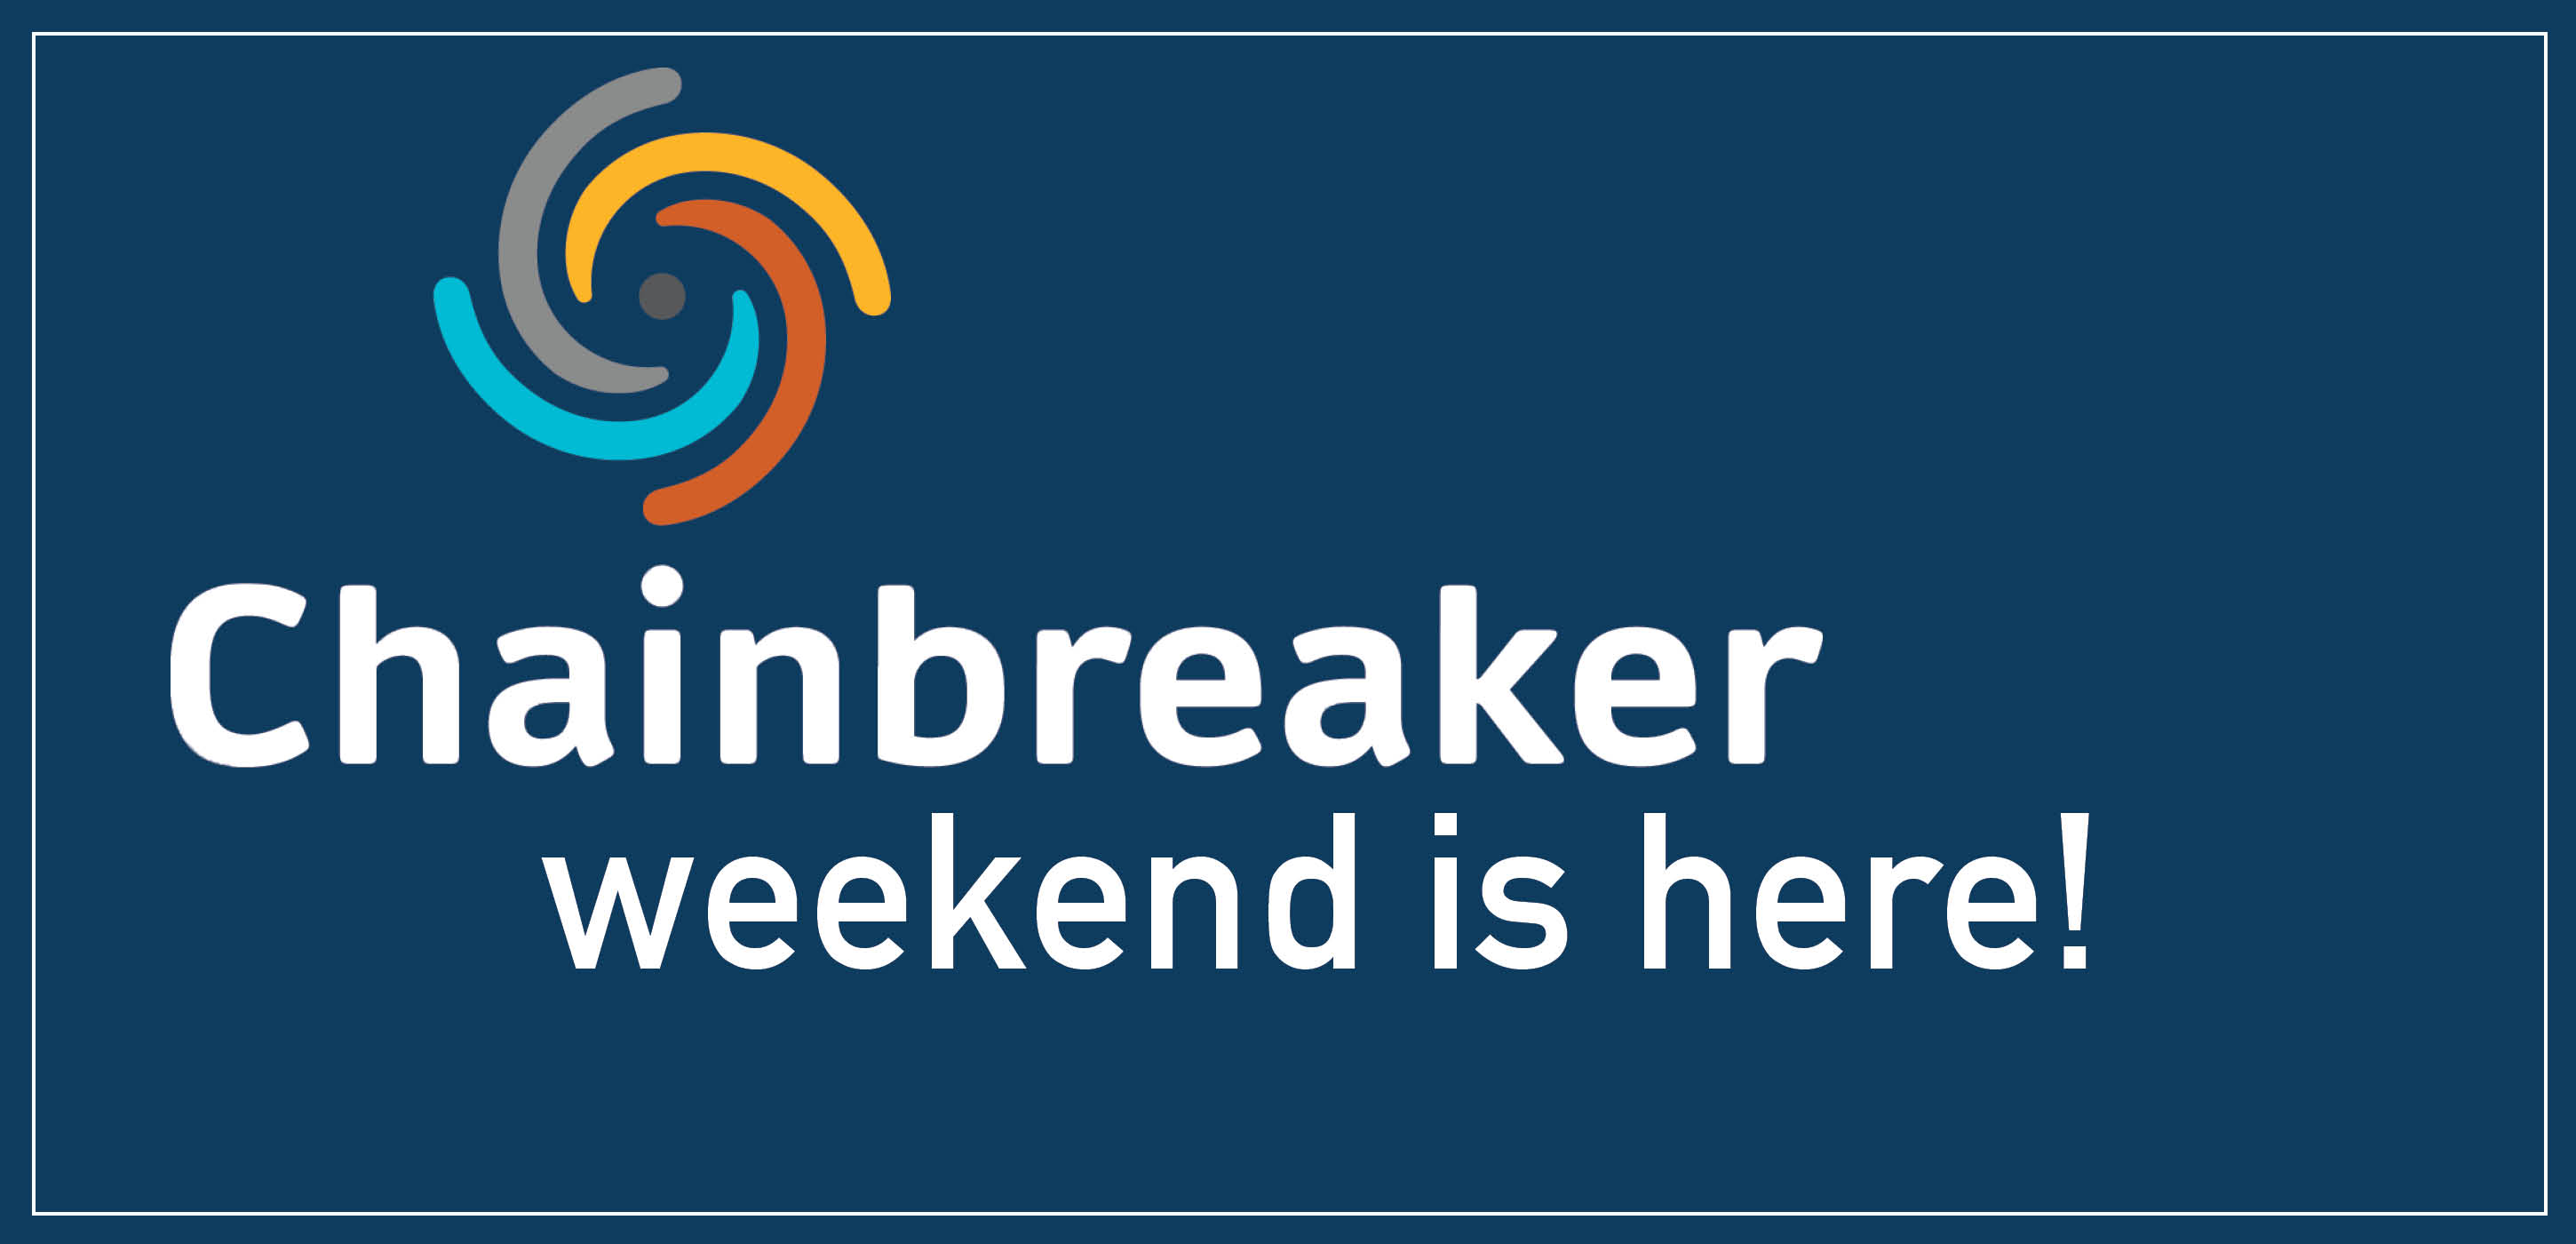 Chainbreaker weekend is here!